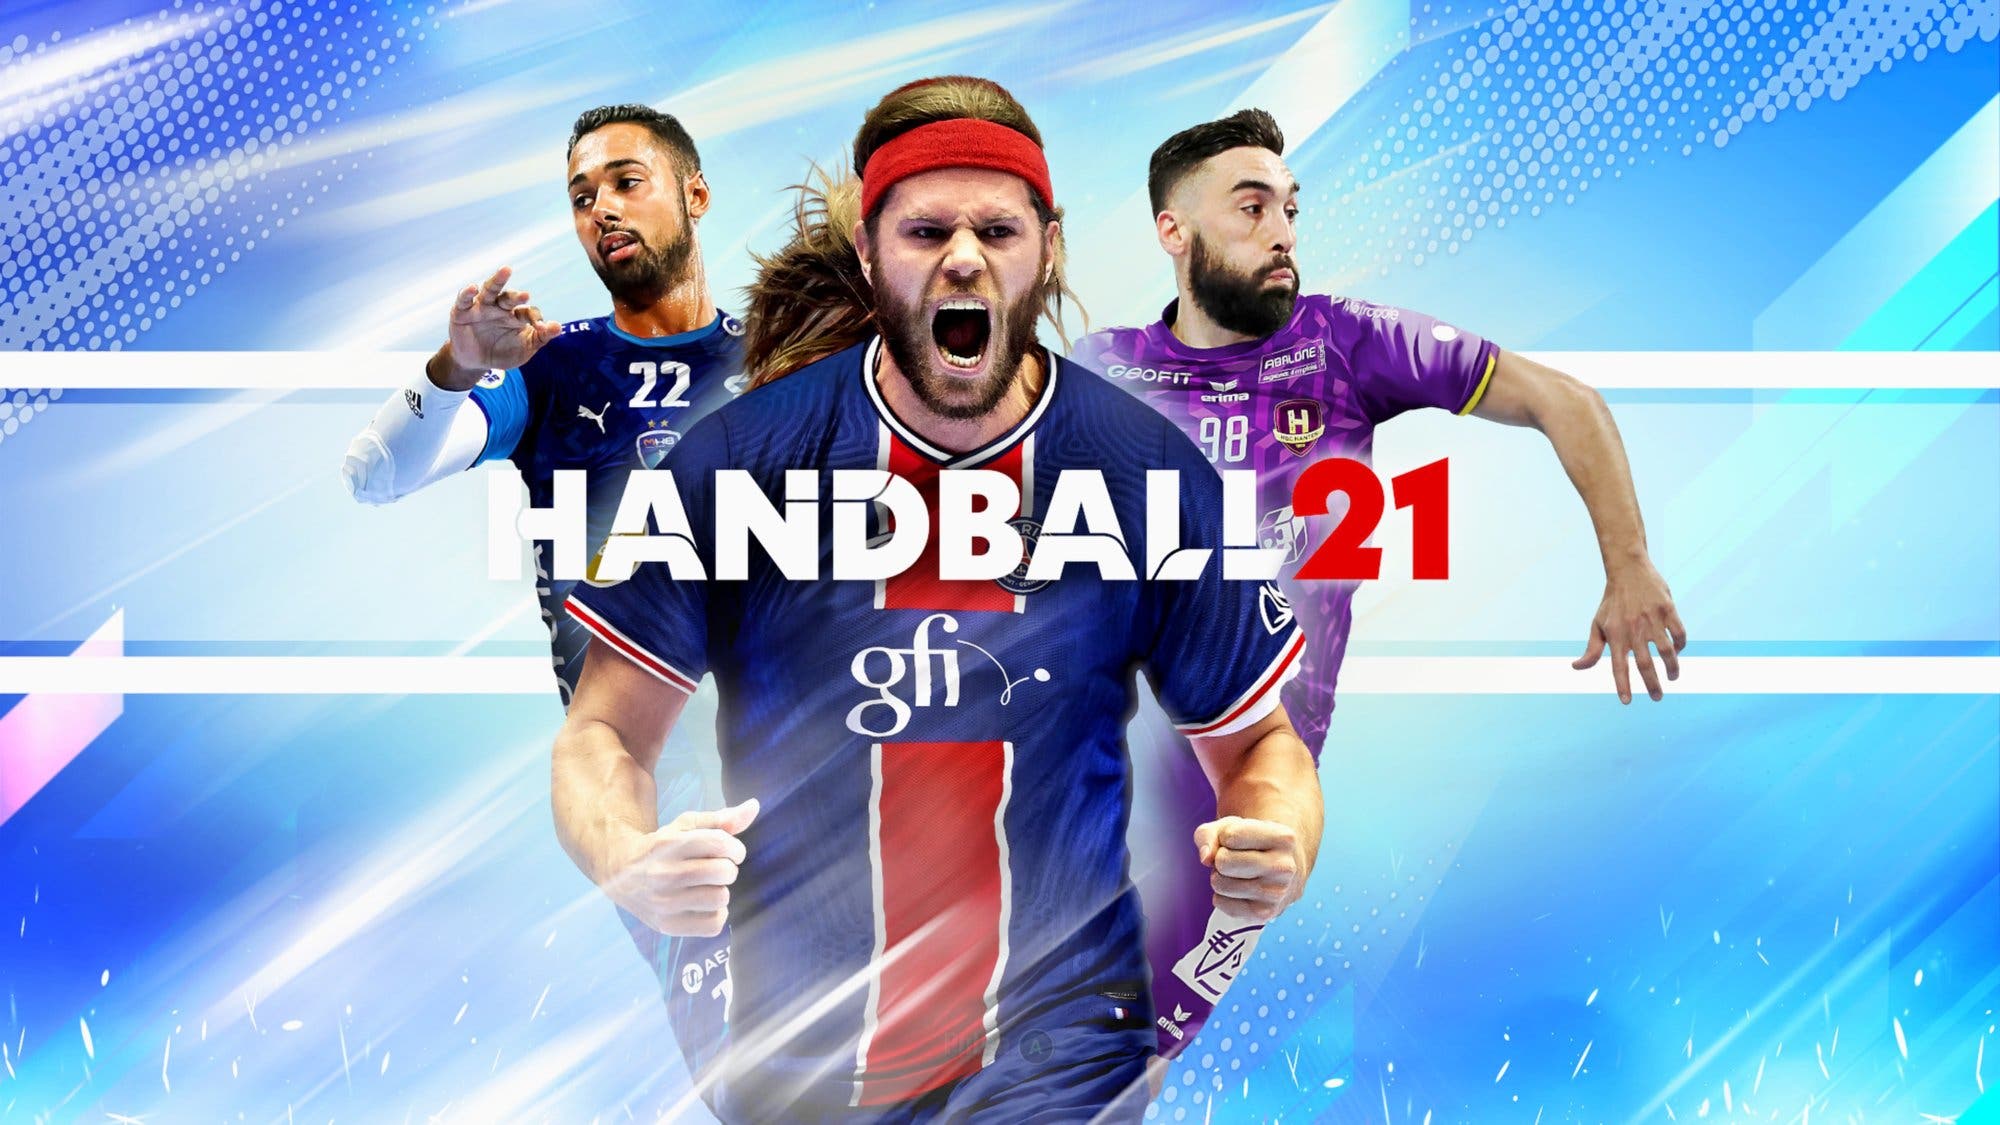 Handball 21 para Xbox One